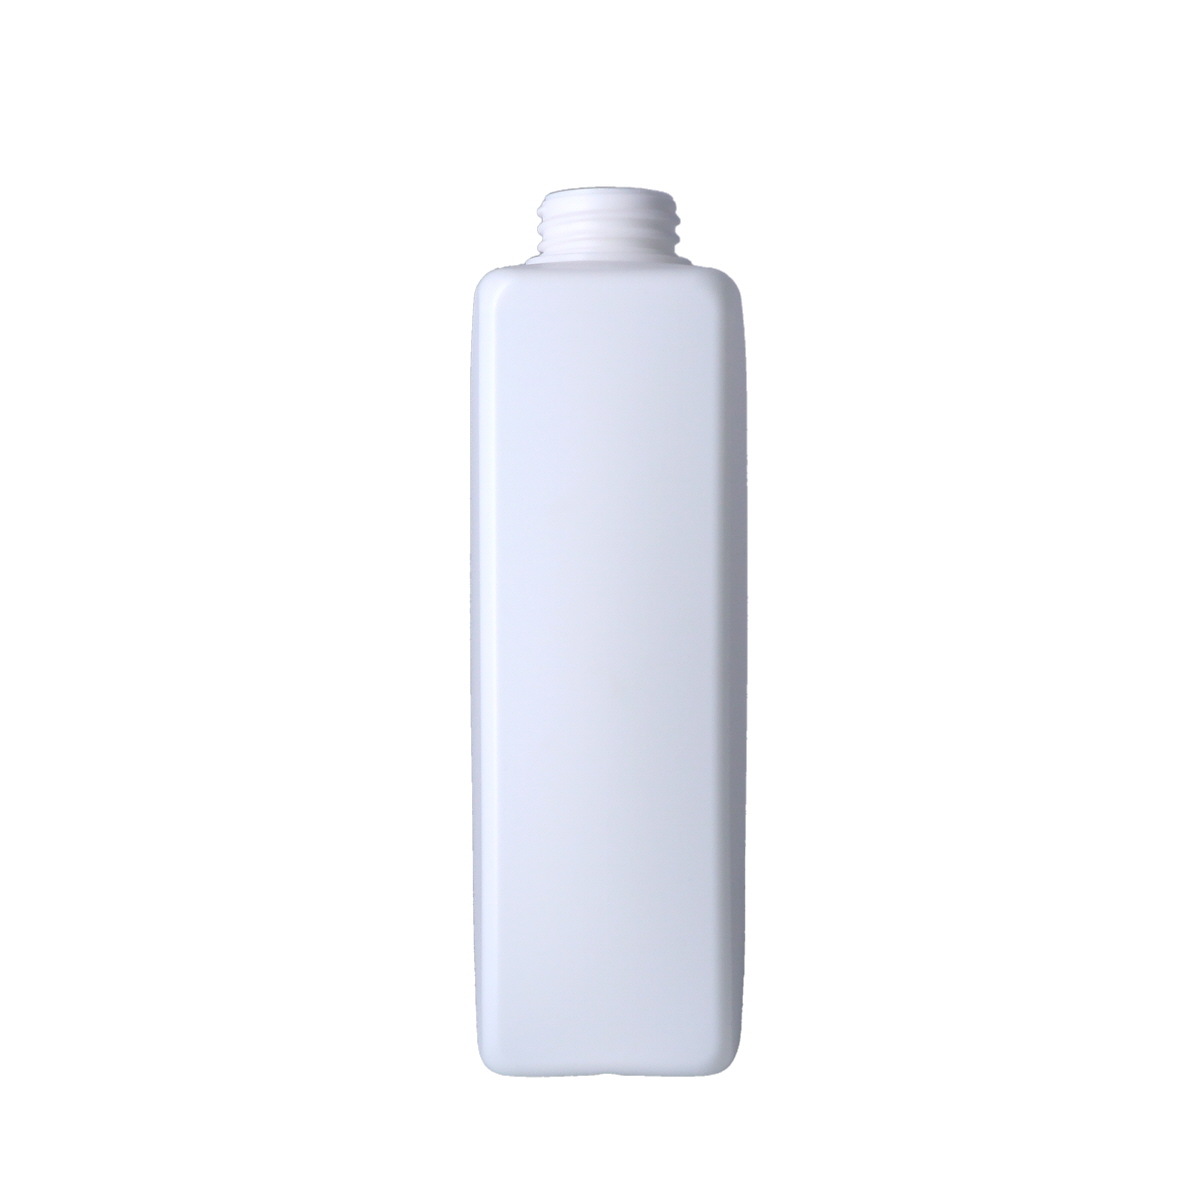 PE瓶,500ml以上,HDPE瓶,PE瓶,洗髮精,沐浴乳,乳液,PCR